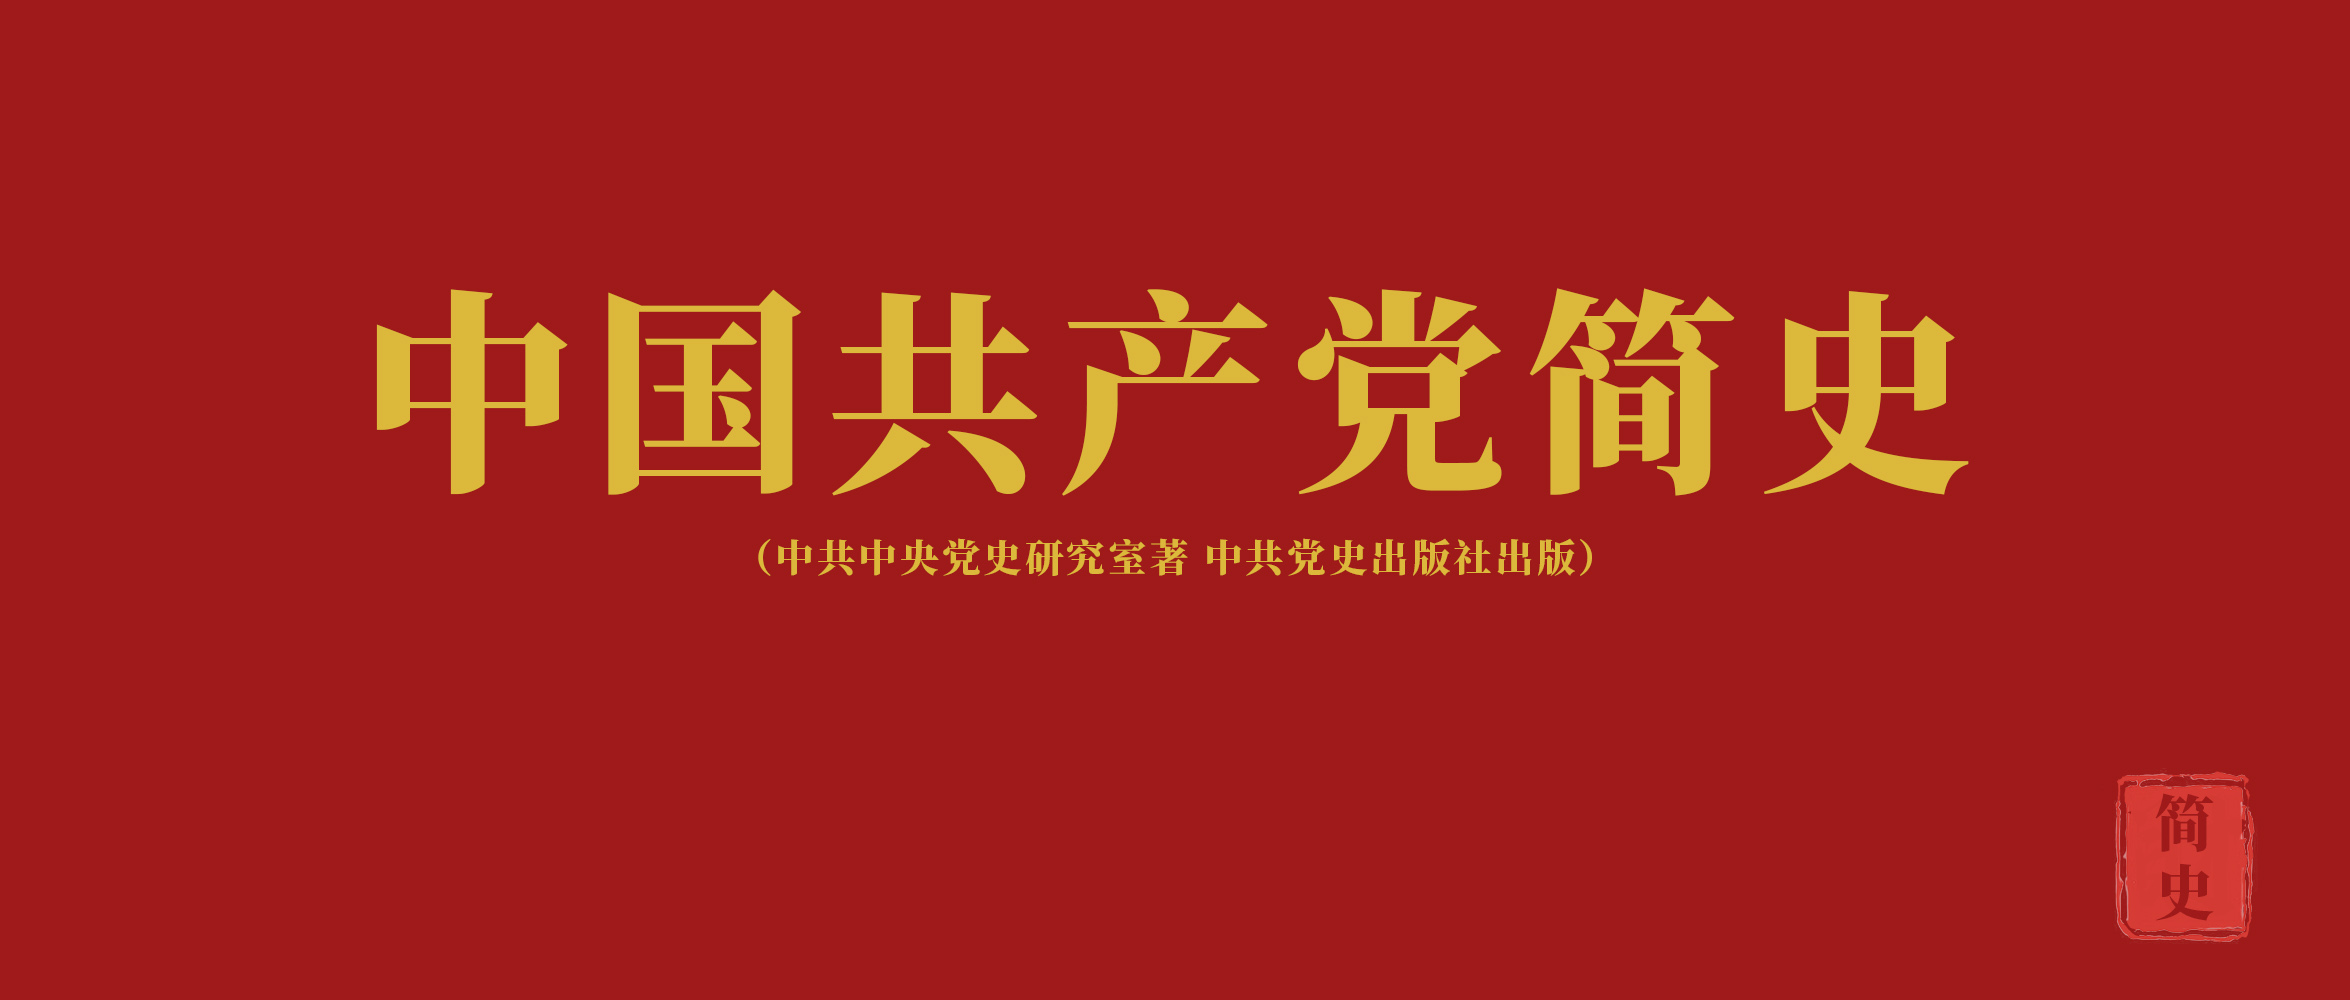 《中国共产党简史》第十章进入社会主义改革开放和现代化建设新阶段